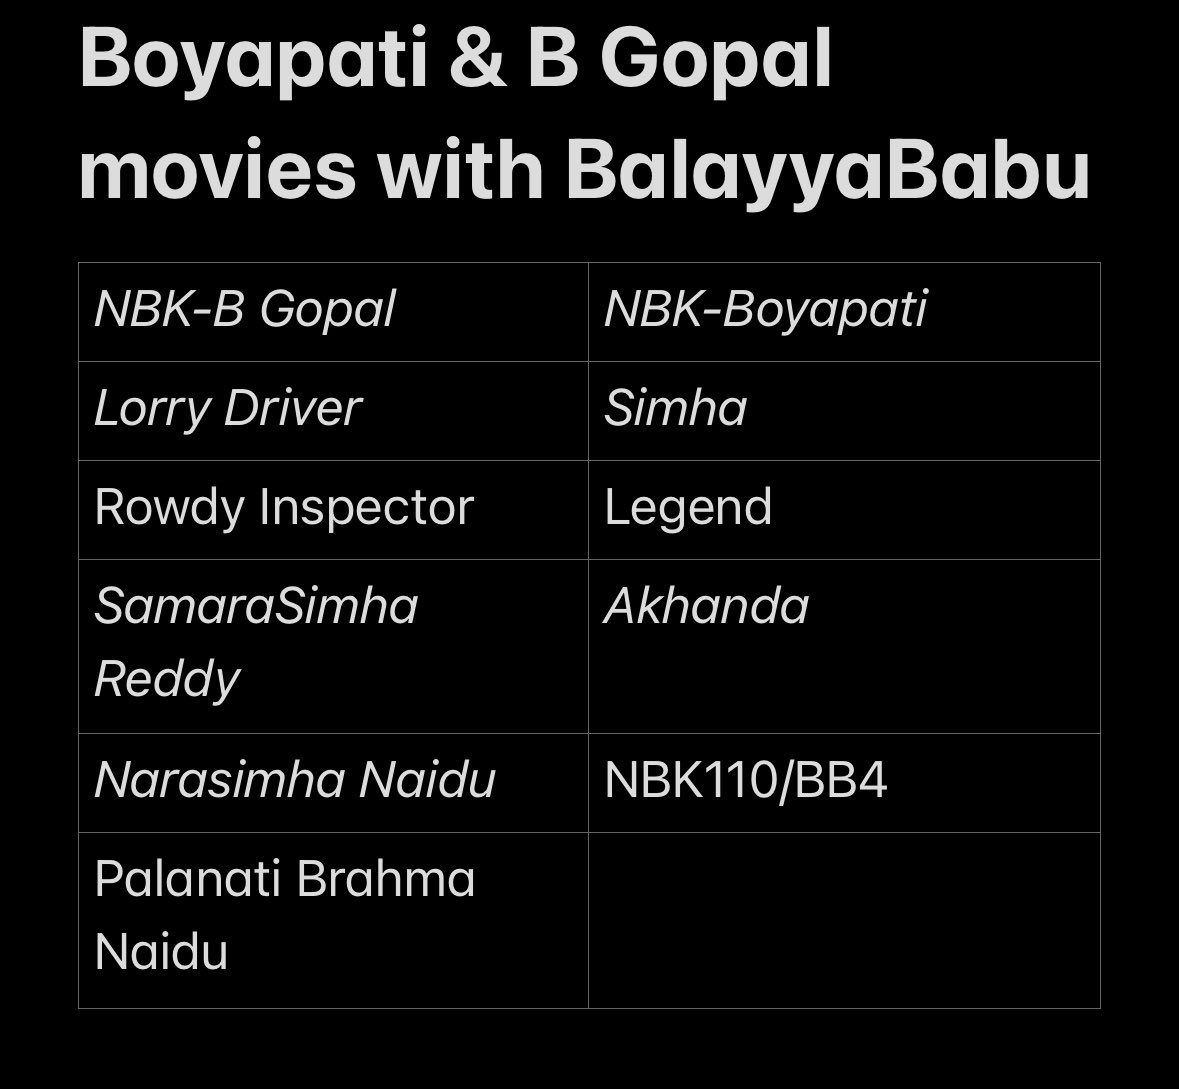 Balayya - Boyapati - 14 Reels #NBK110 Eesari maro #NaraSimhaNaidu ee BalayyaBabu and Senior heroes lo biggest blockbuster loading 🔥🔥🌋🌋💥💥💃💃

#NandamuriBalakrishna